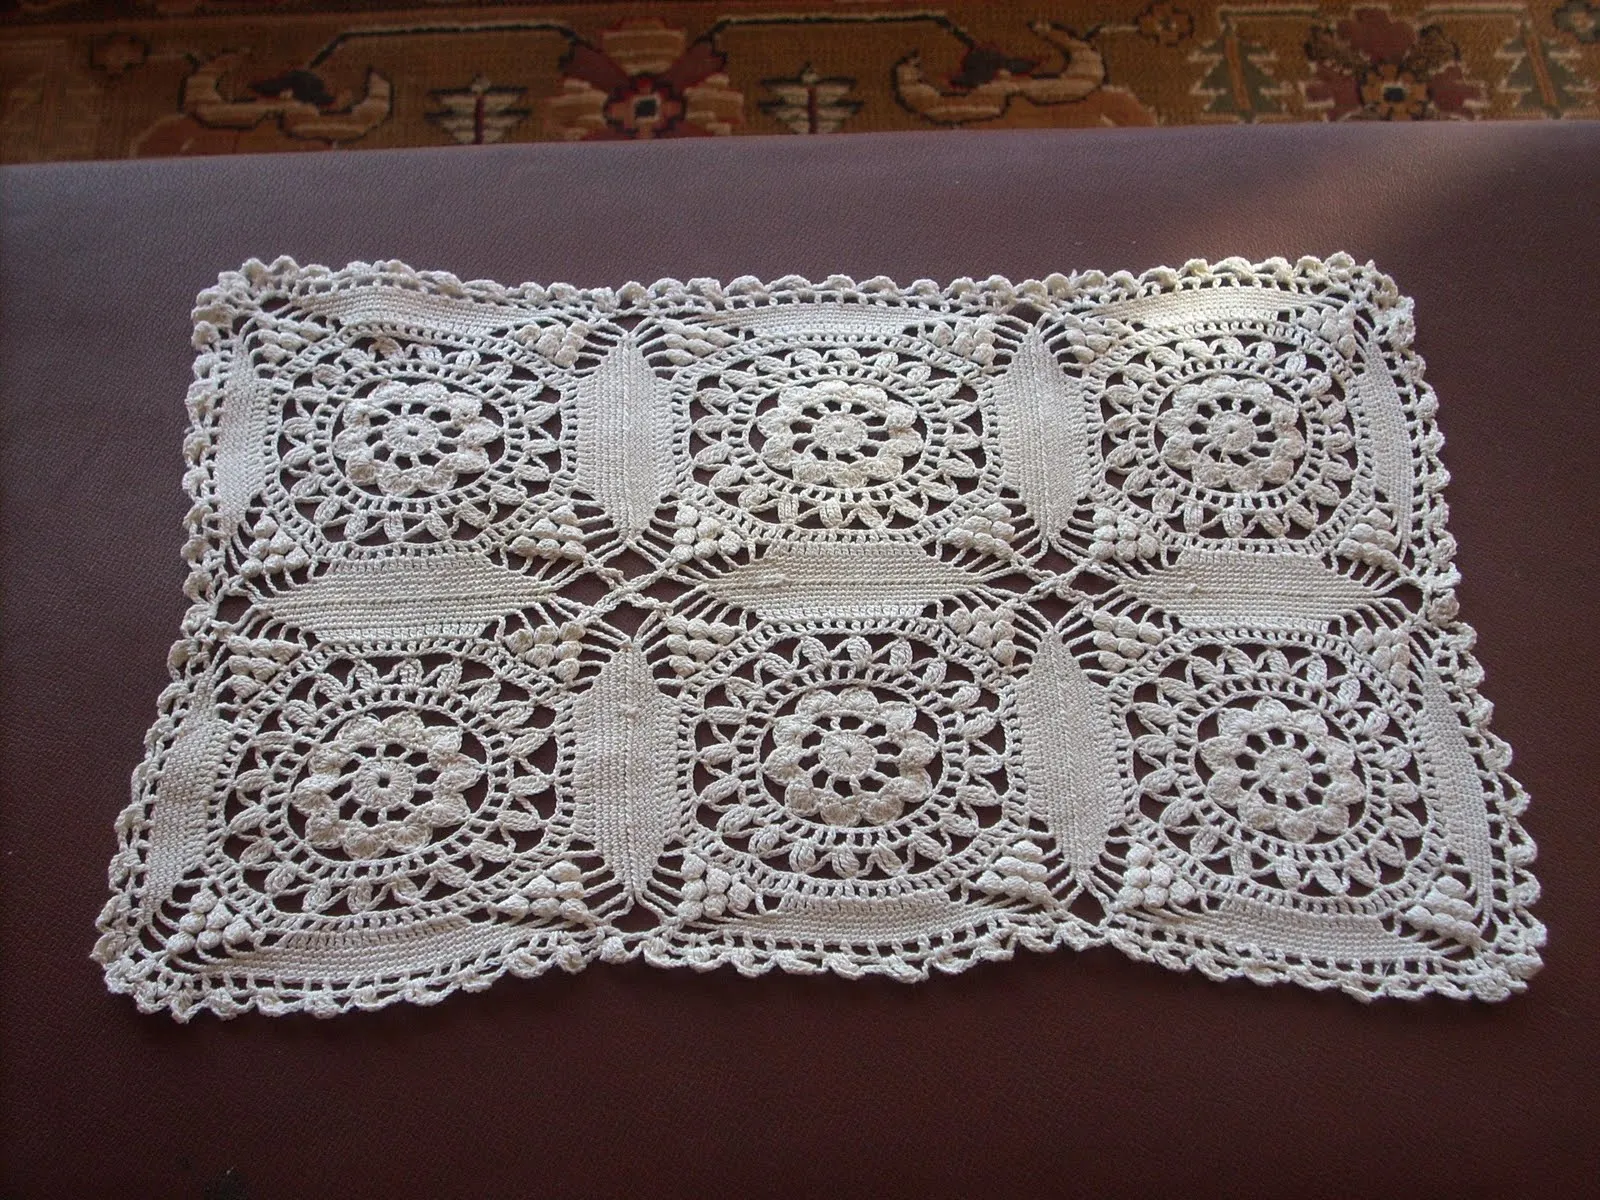 Como hacer carpetas en crochet cuadradas - Imagui